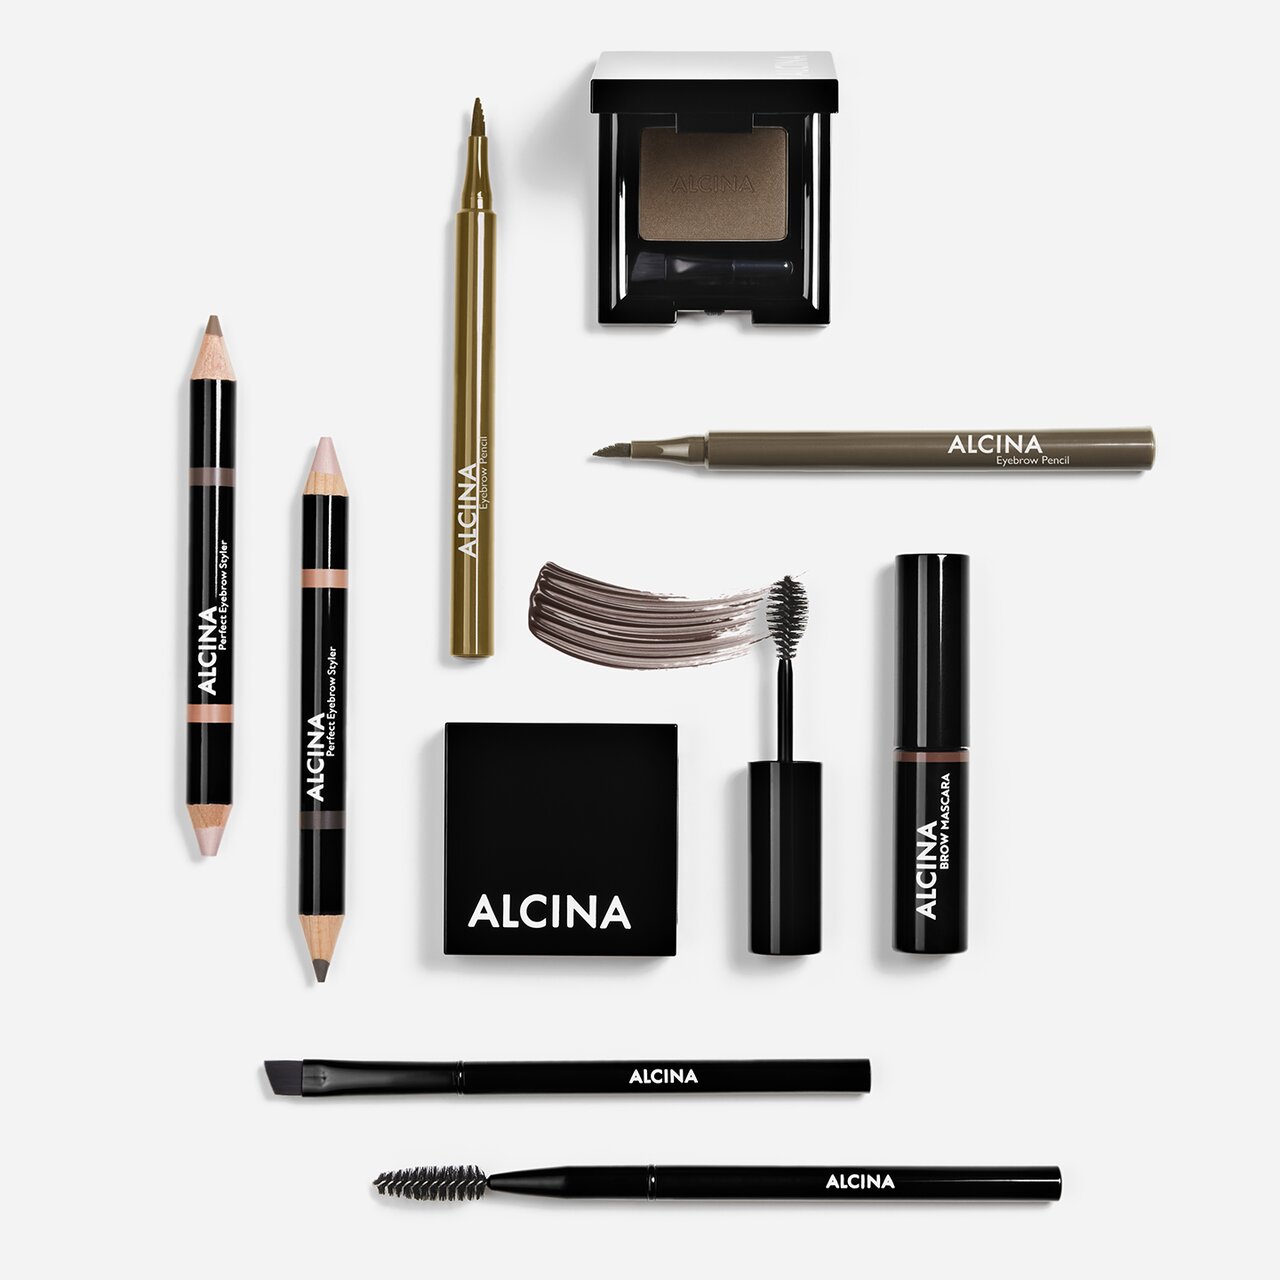 Augenbrauen Make-up Produkte Alcina